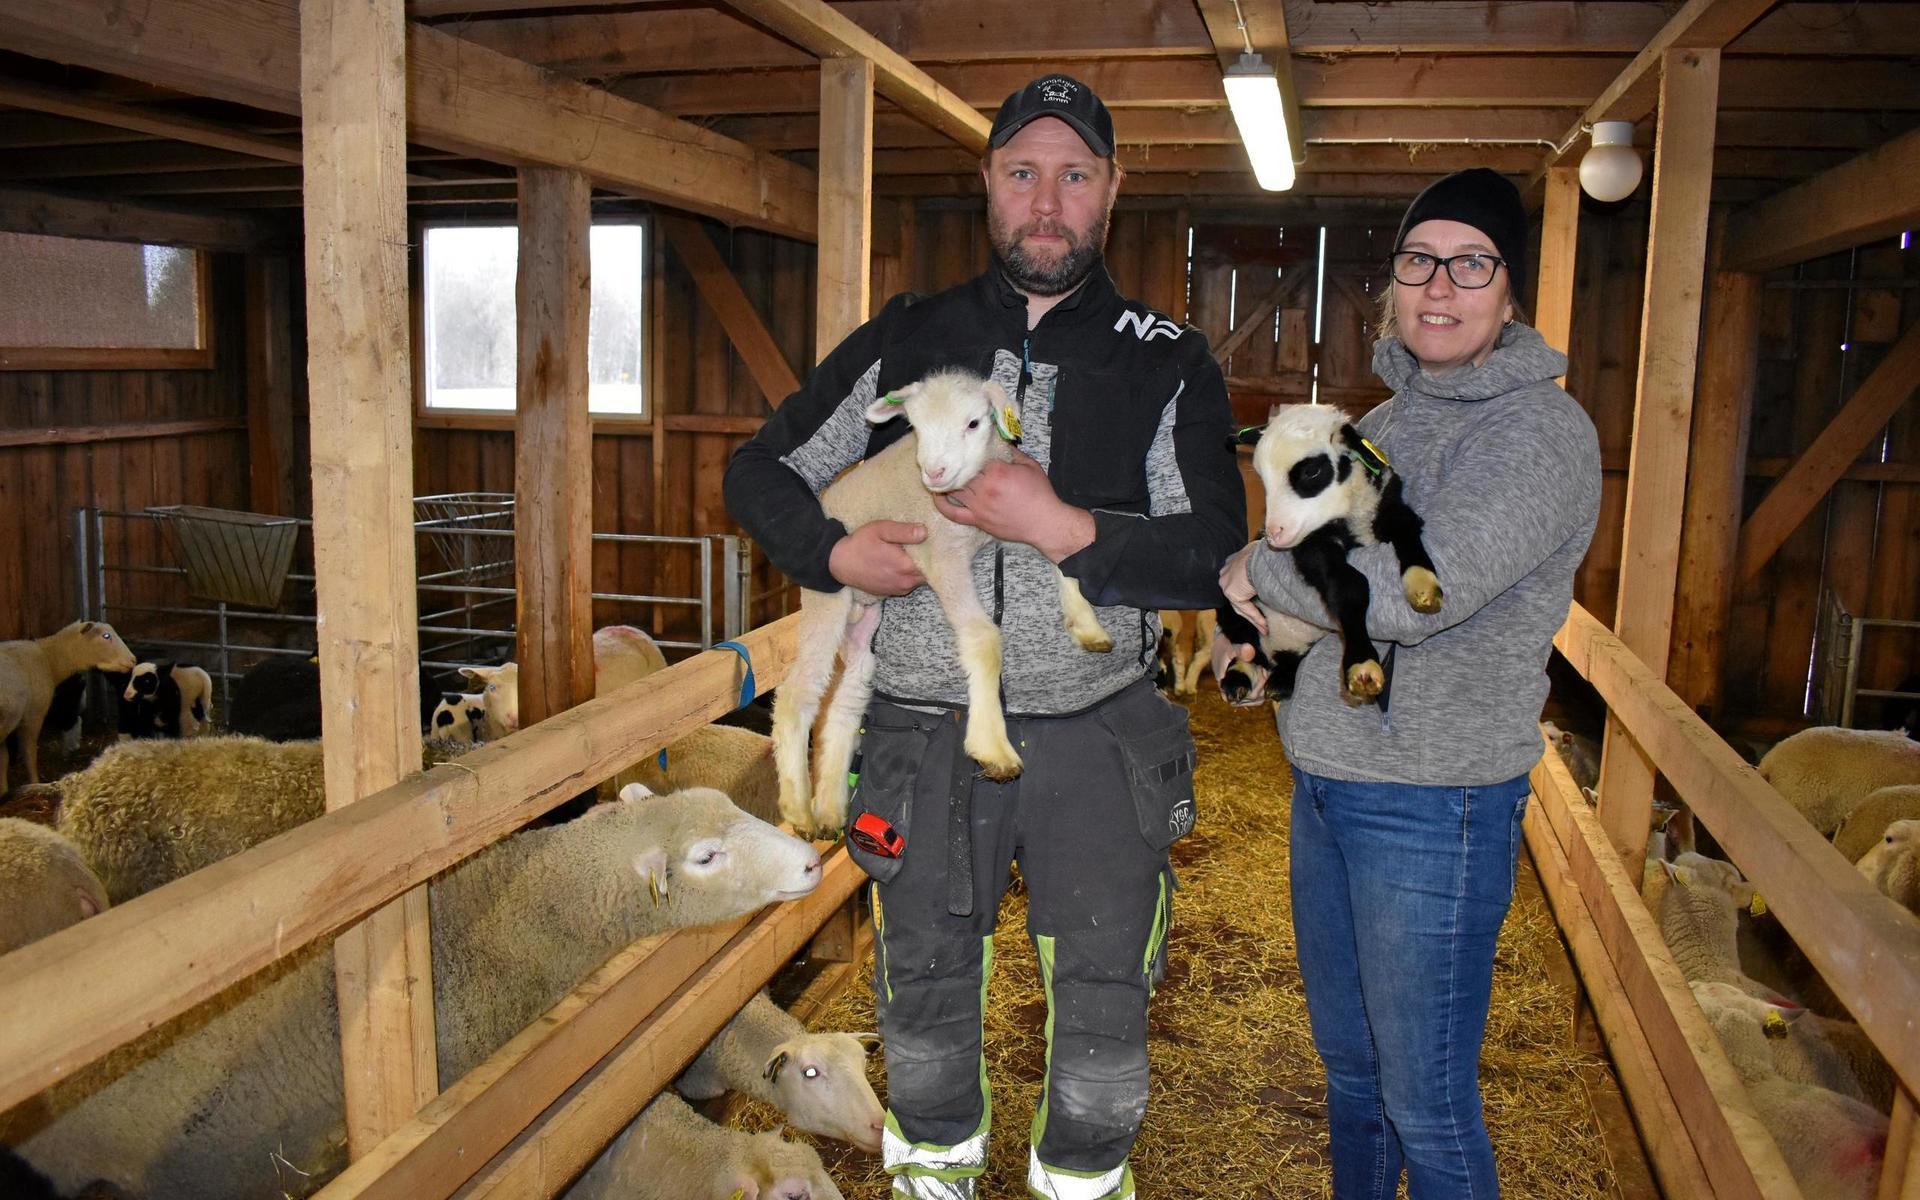 Marcus och Viktoria Gustavsson har utökat sitt företag Långaryds lamm med nya betesmarker, en till ladugård – och ett nytt bostadshus till sig själva. Klicka vidare i bildspelet!